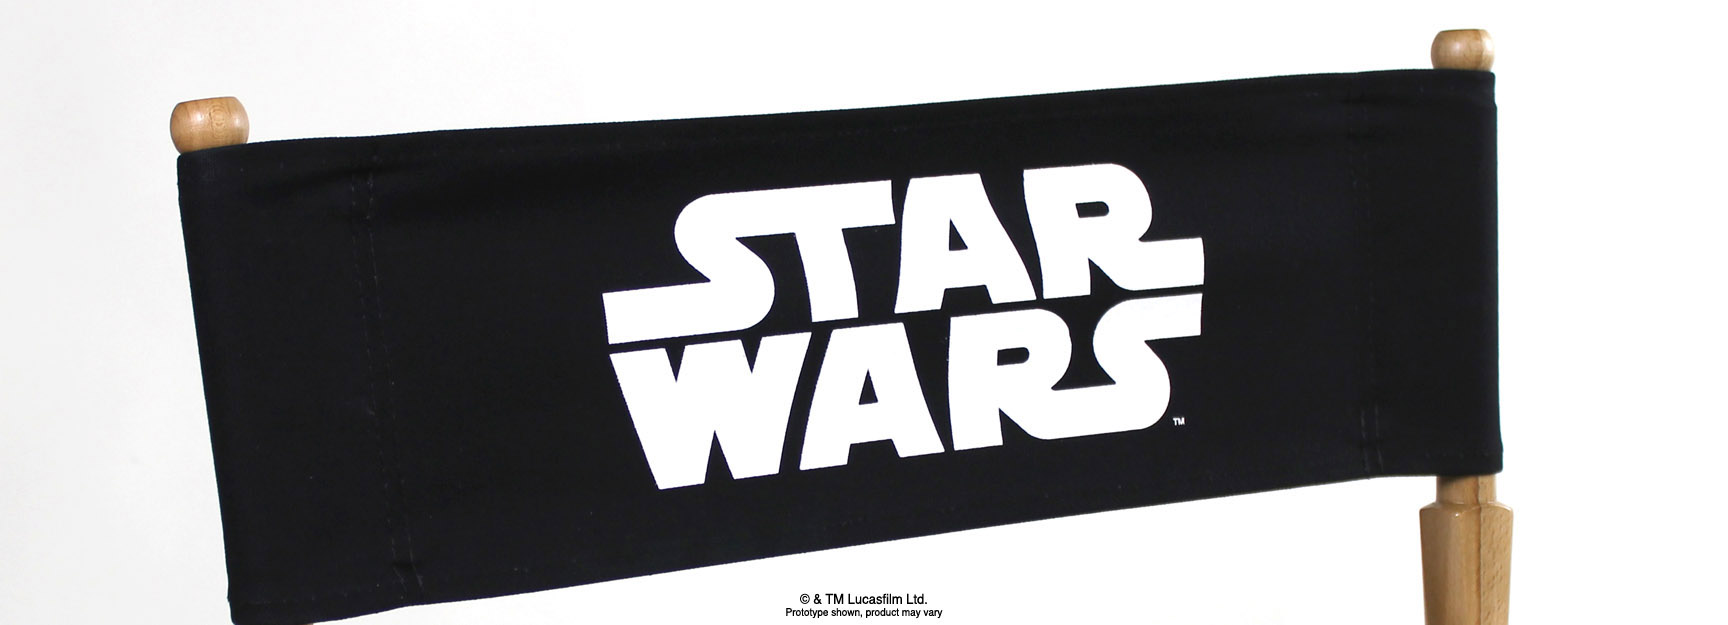 Star wars movie logo directors chair